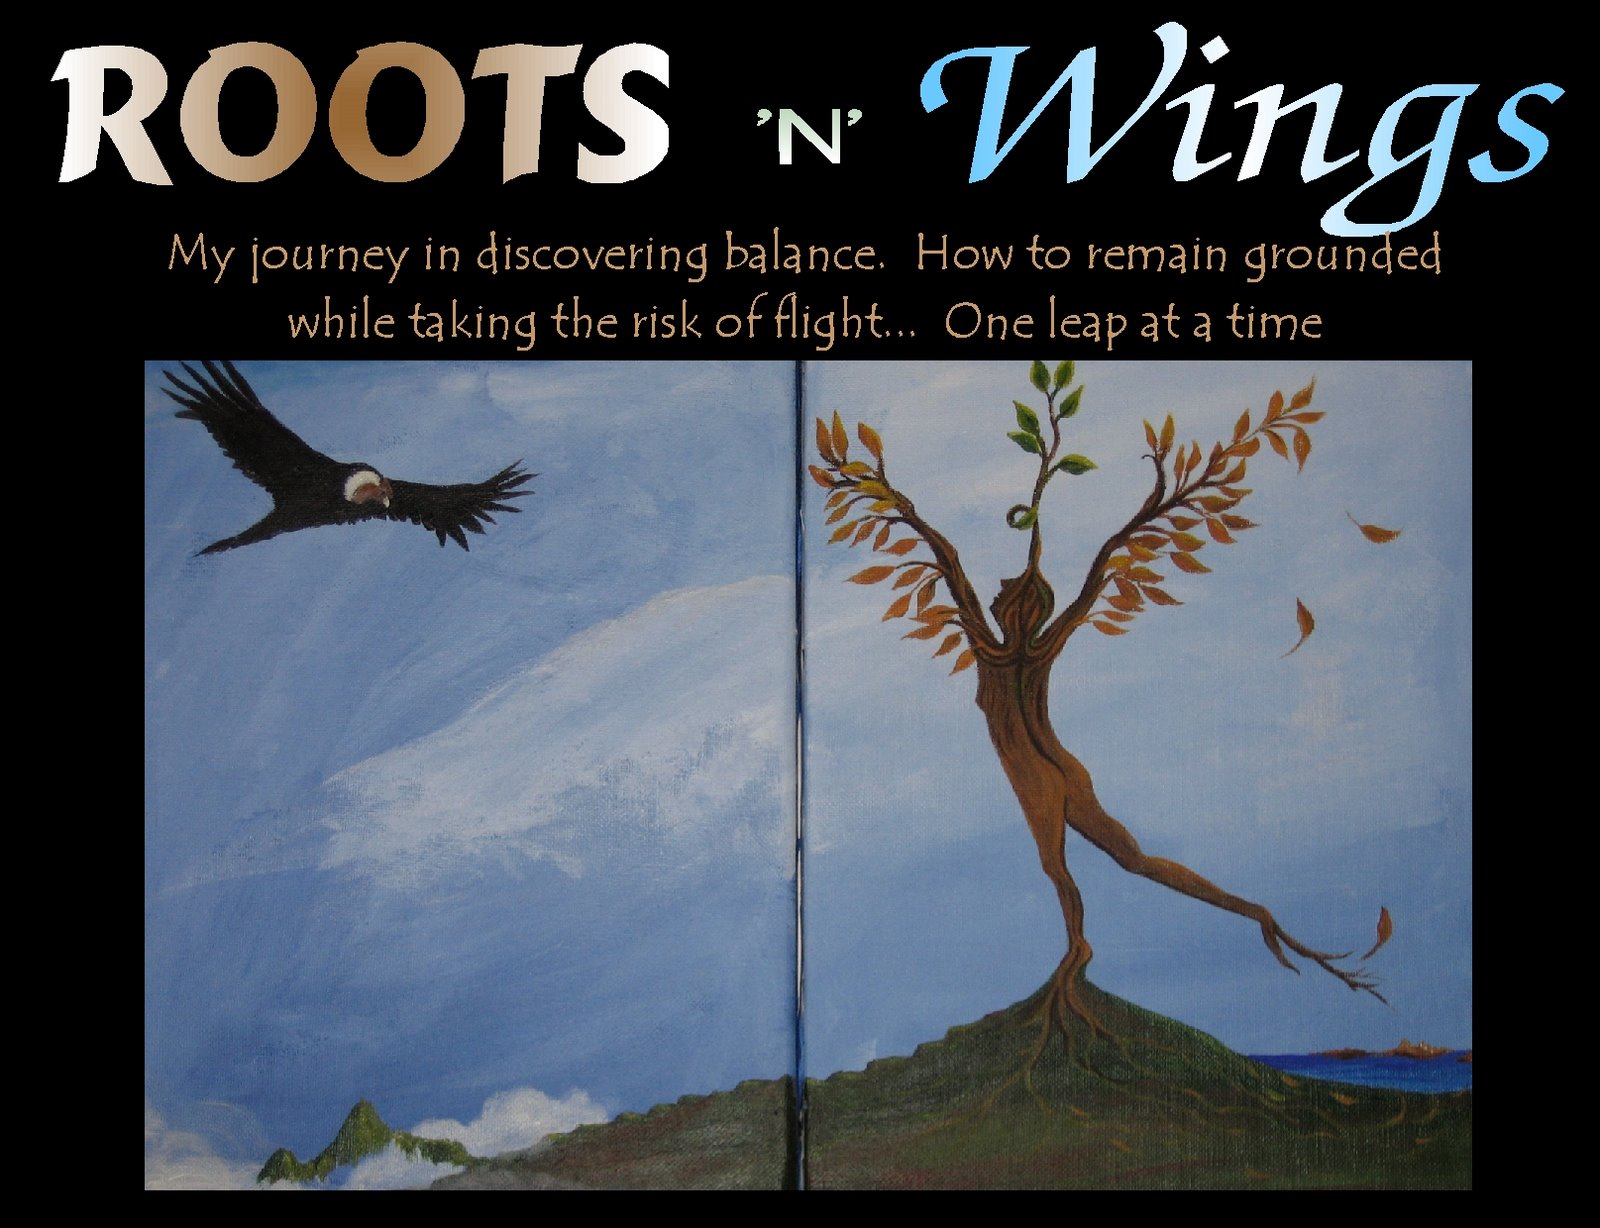 Roots 'n' Wings